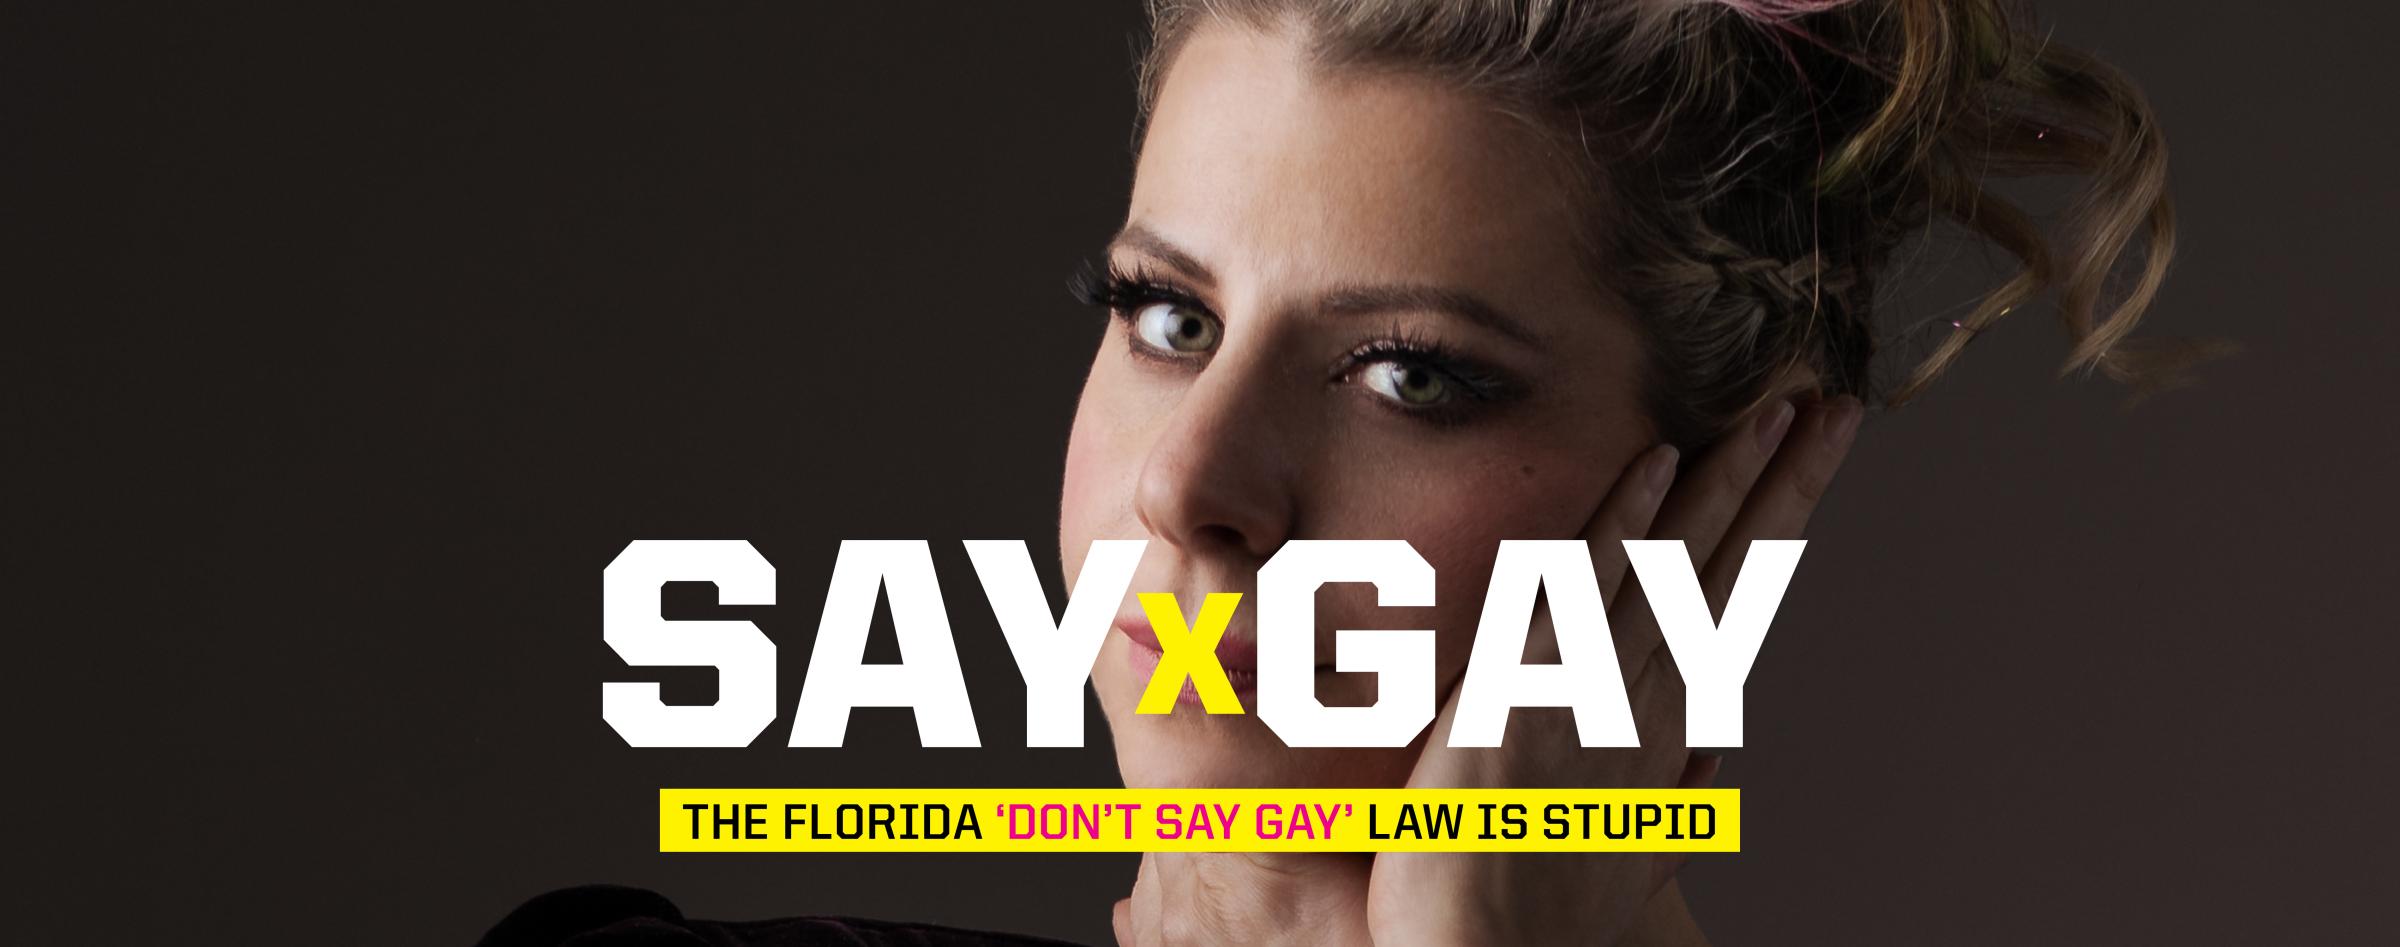 Say Gay (Workshop Designs) - 